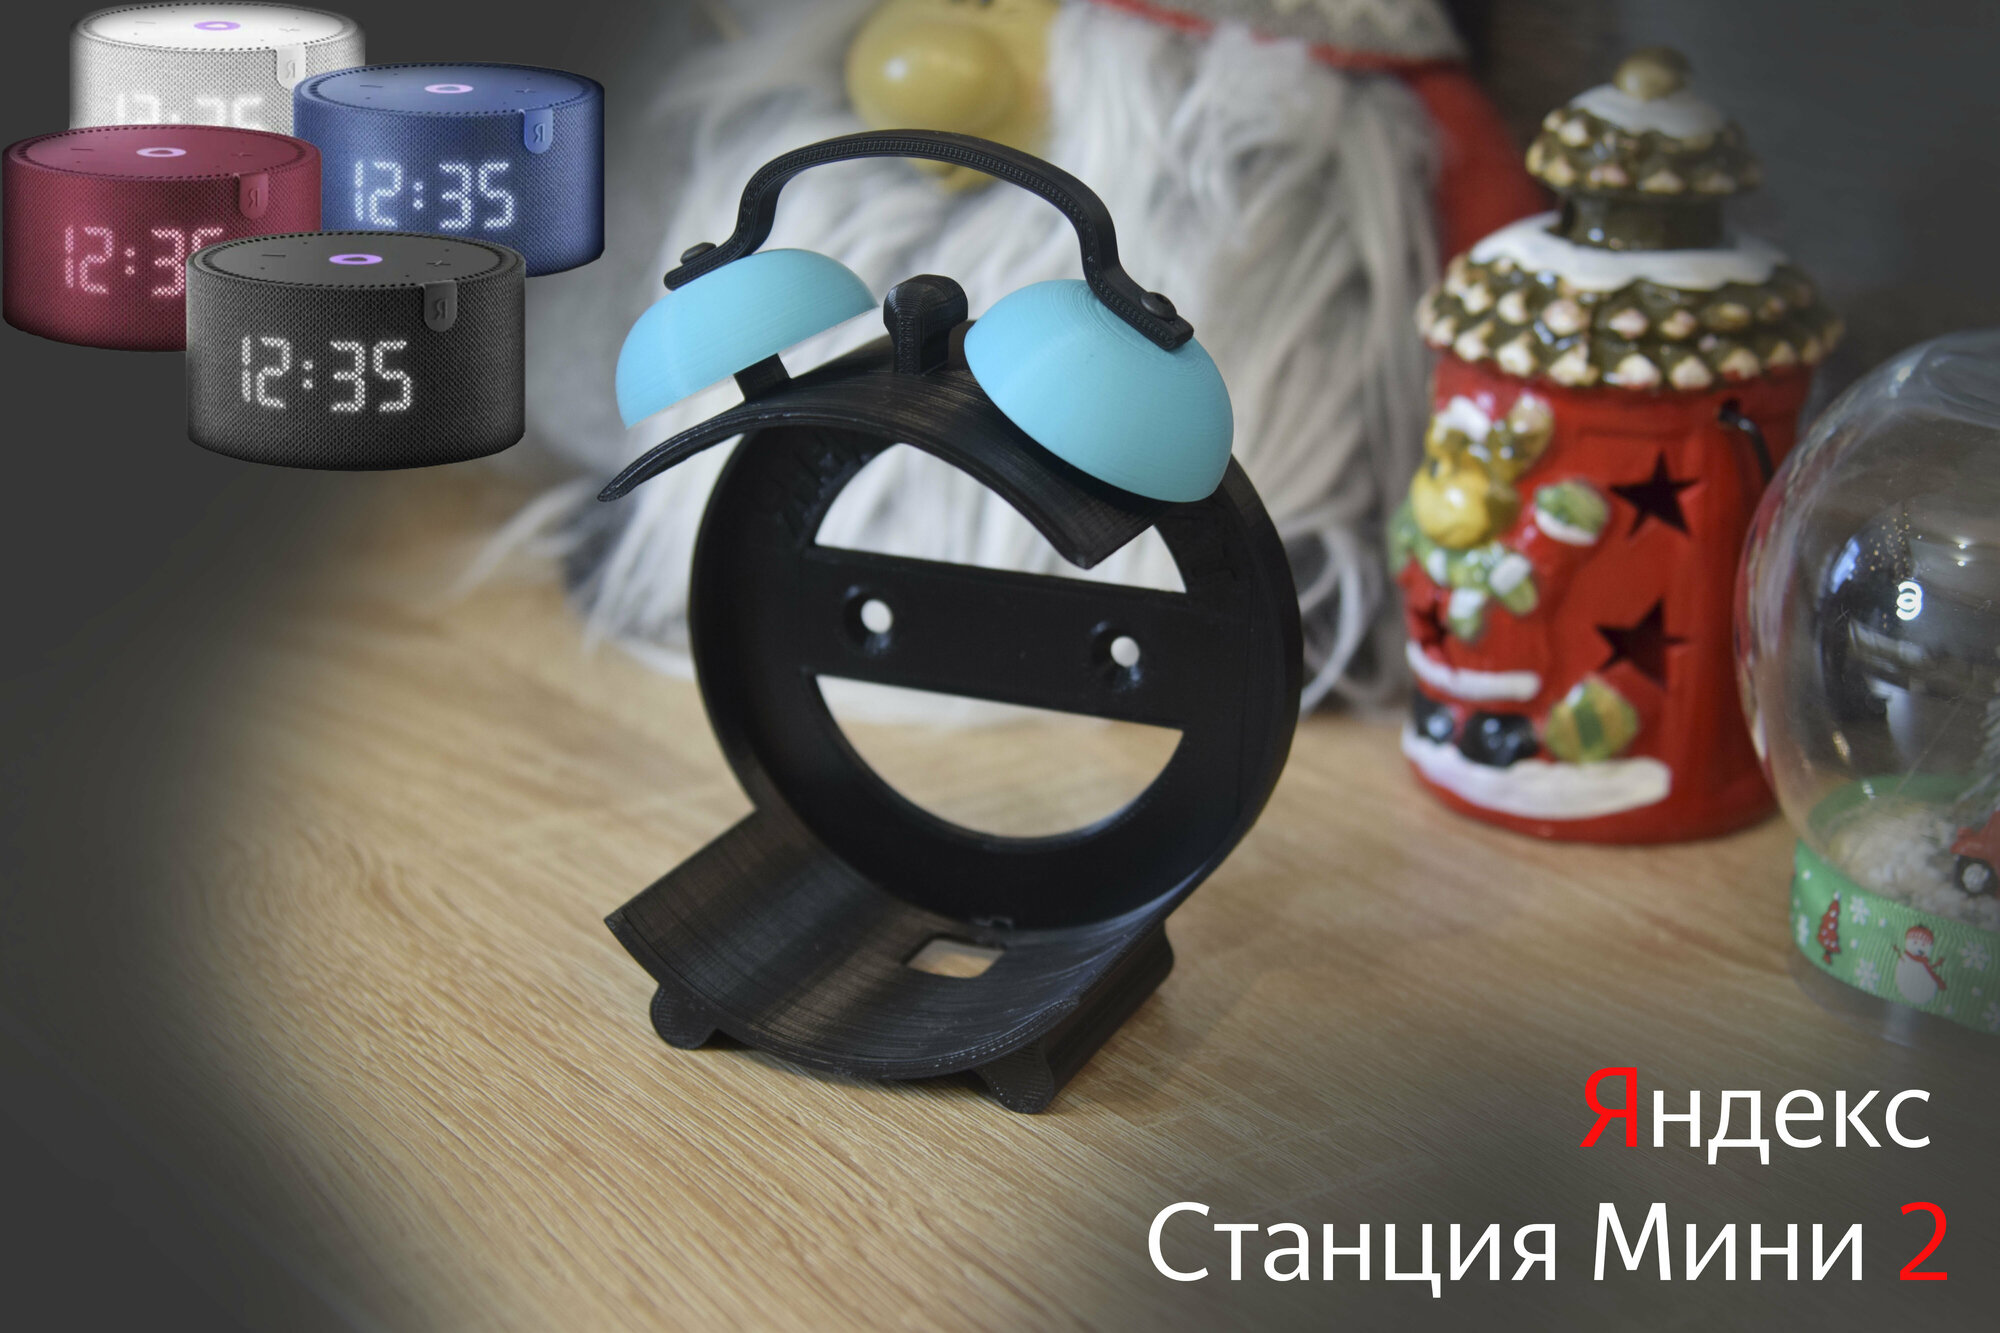 Подставка для Яндекс Cтанции Мини 2 (с часами и без часов) (черная с бирюзовым)